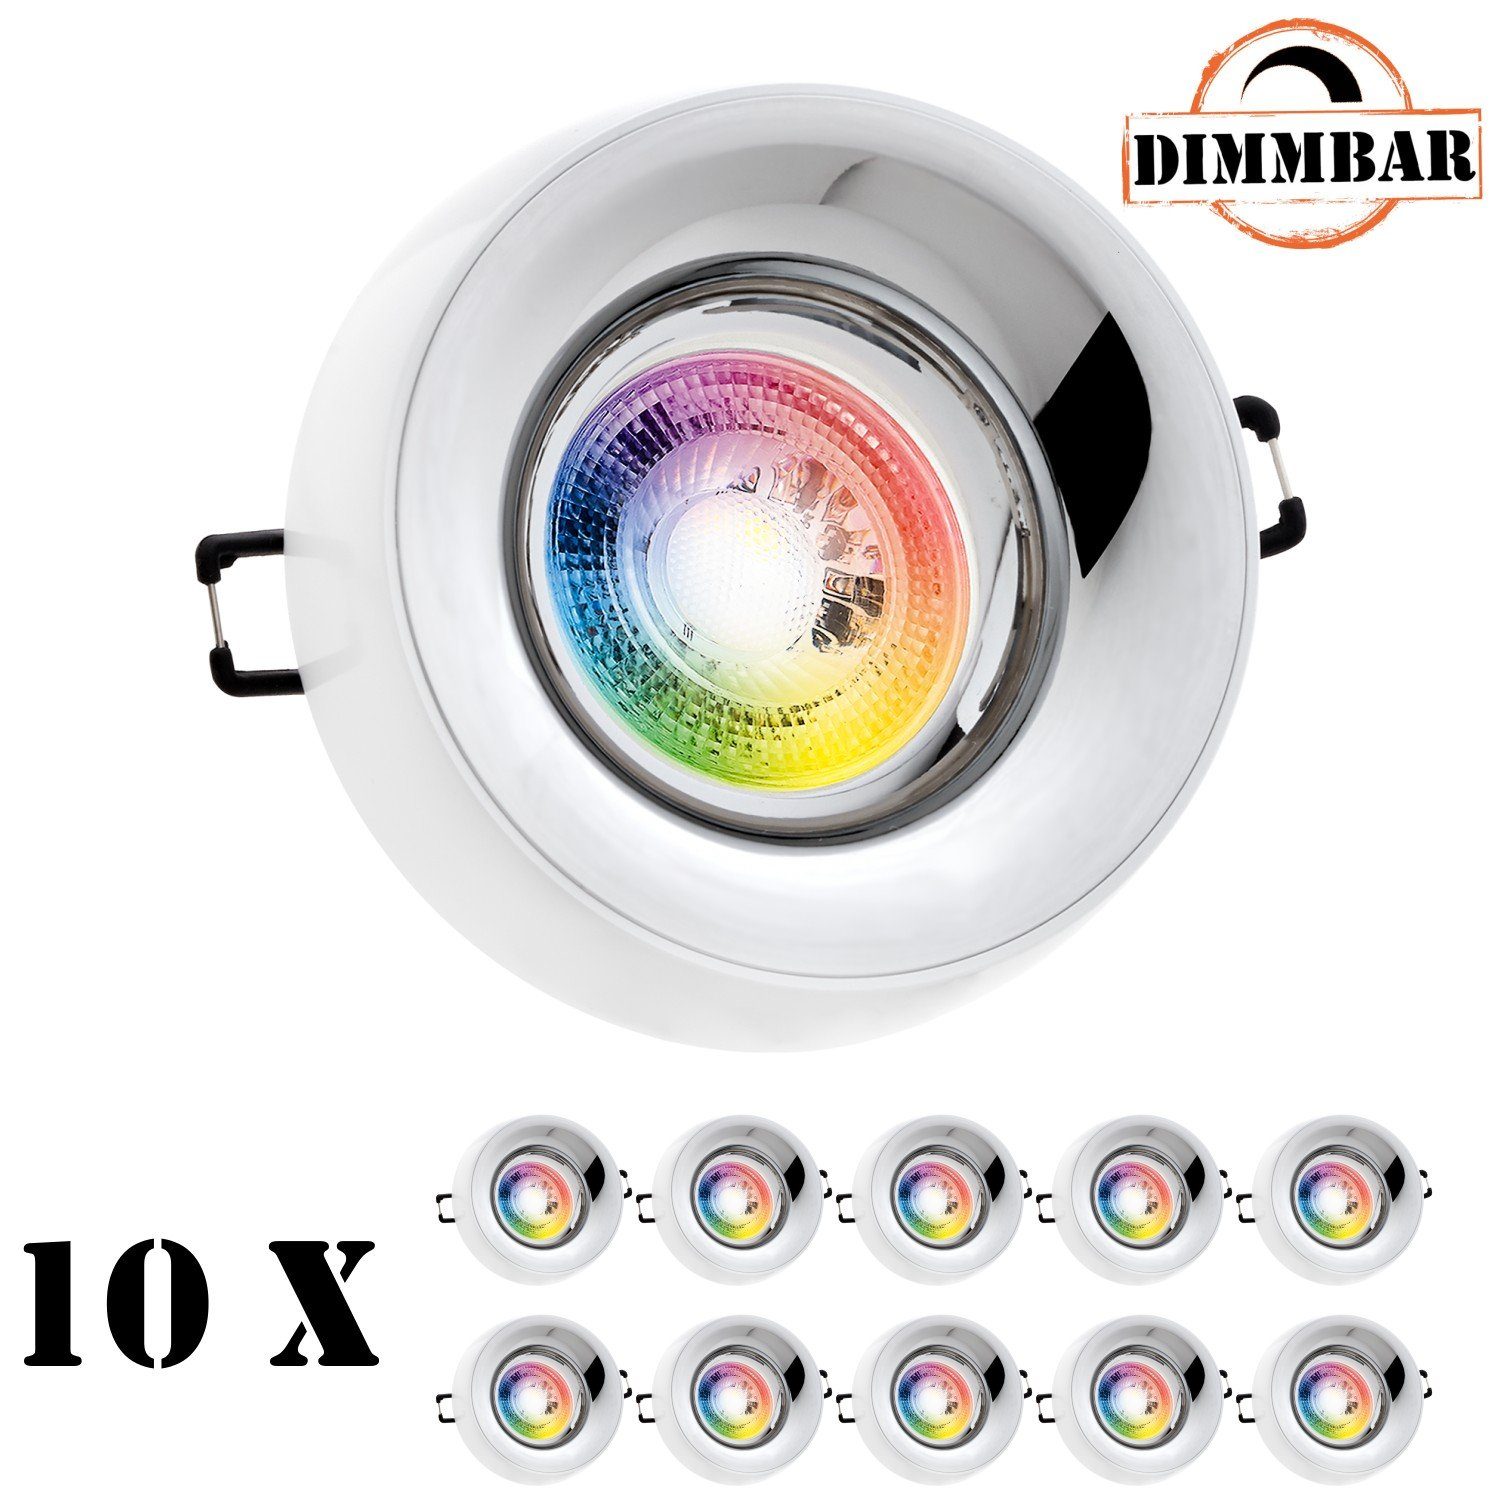 LEDANDO LED Einbaustrahler 10er RGB LED Einbaustrahler Set GU10 in weiß mit  3W LED von LEDANDO -, 10x LED Leuchtmittel 3W - 11 Farben + Warmweiß -  inkl. Fernbedienung - dimmbar